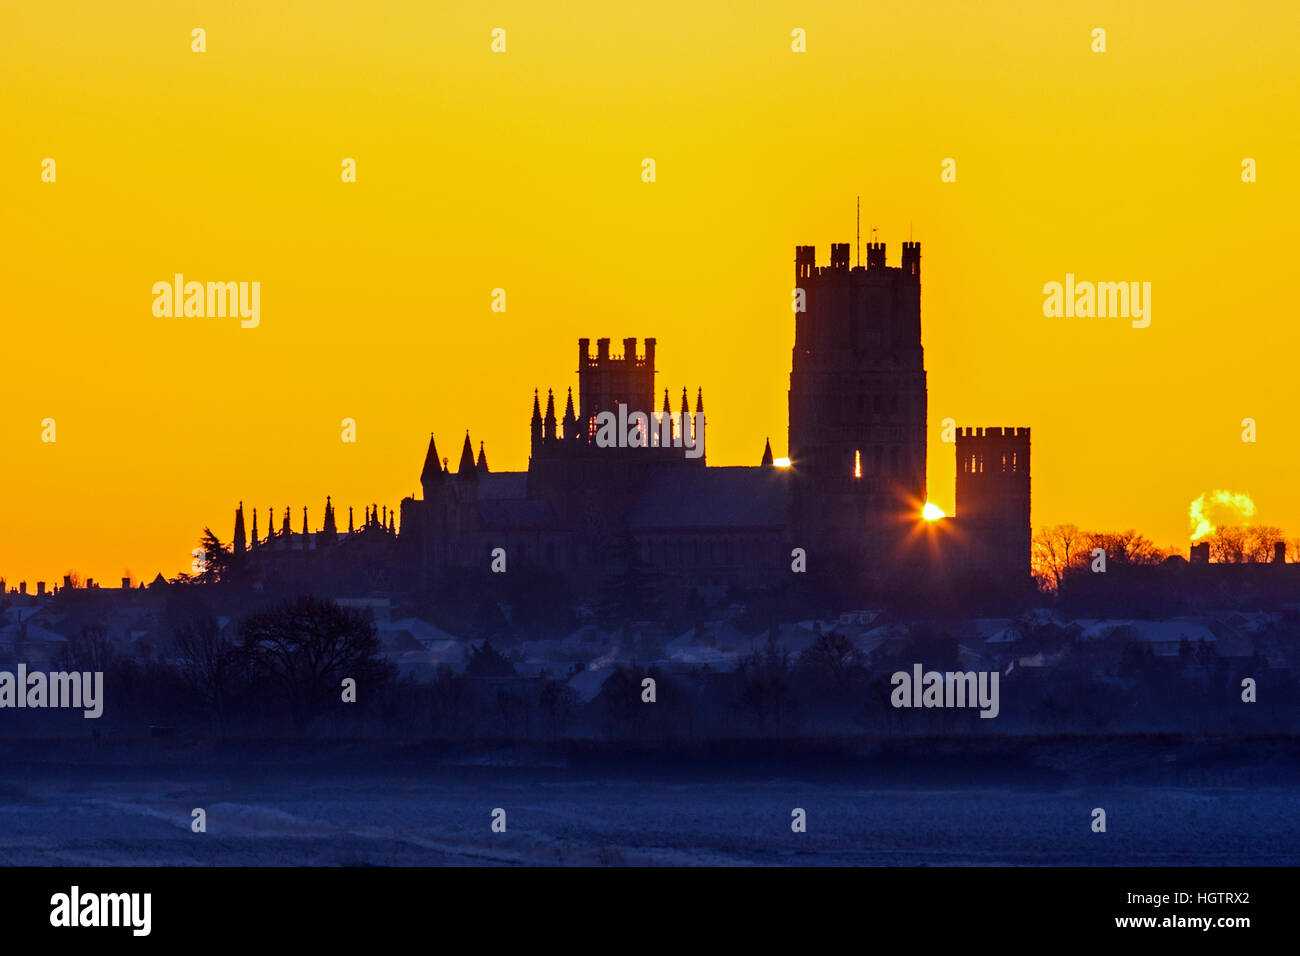 Cathédrale d'Ely silhouetté contre un ciel aube juste avant le lever du soleil,Ely, Cambridgeshire, Angleterre Banque D'Images